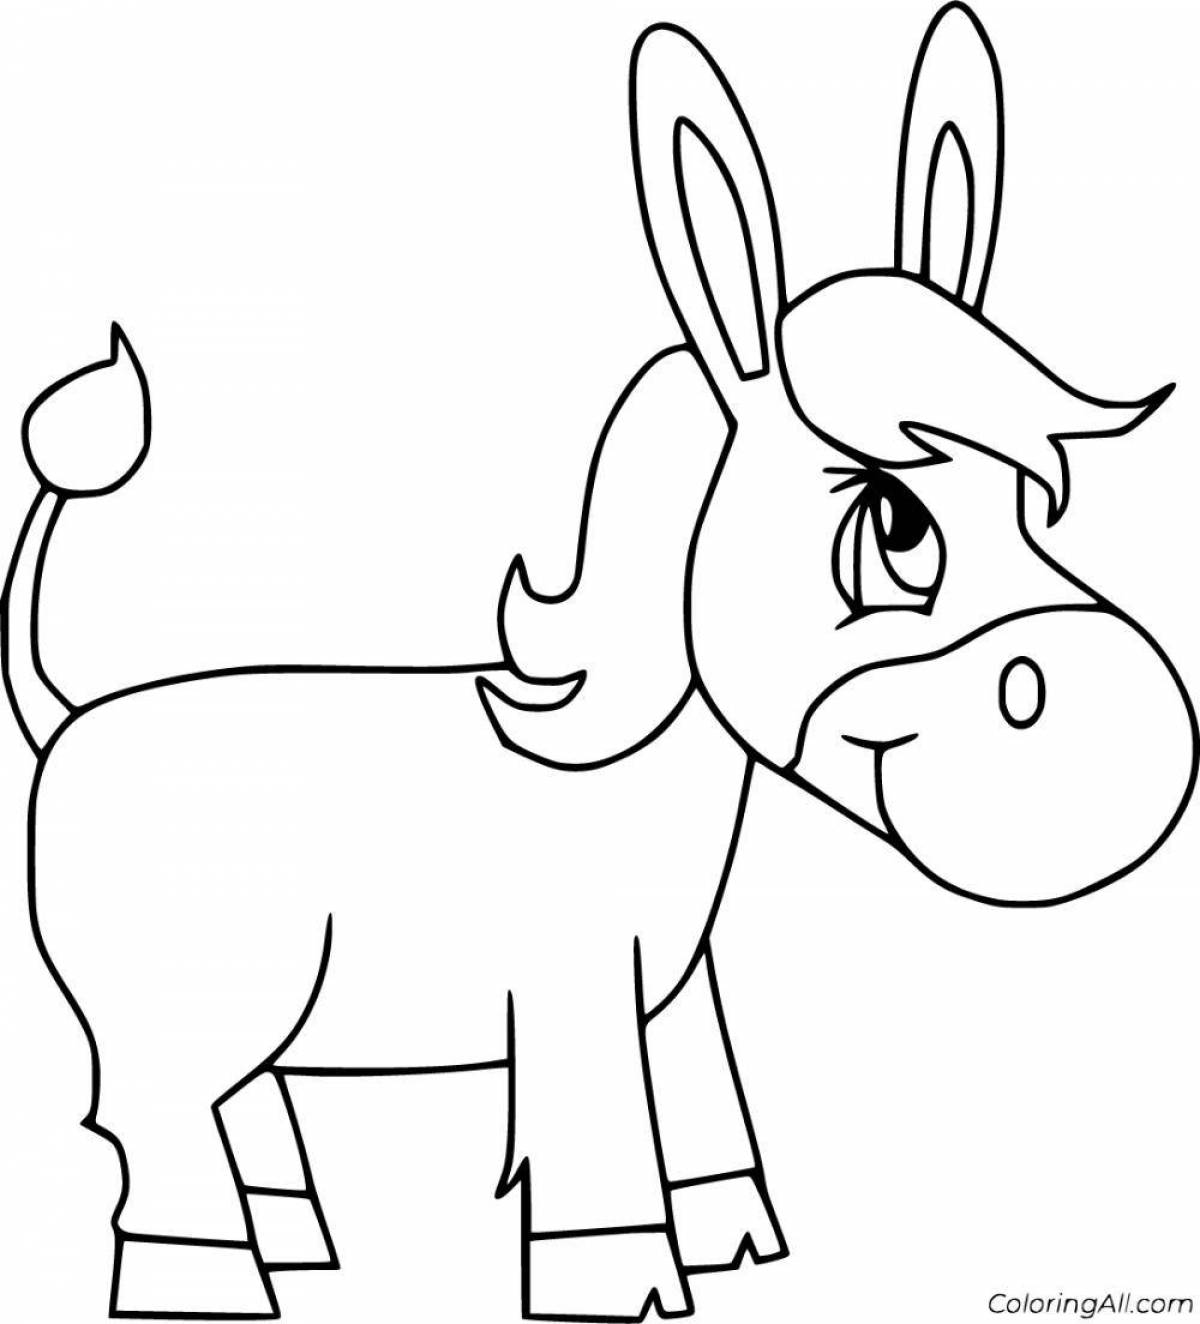 Joyful donkey coloring for kids